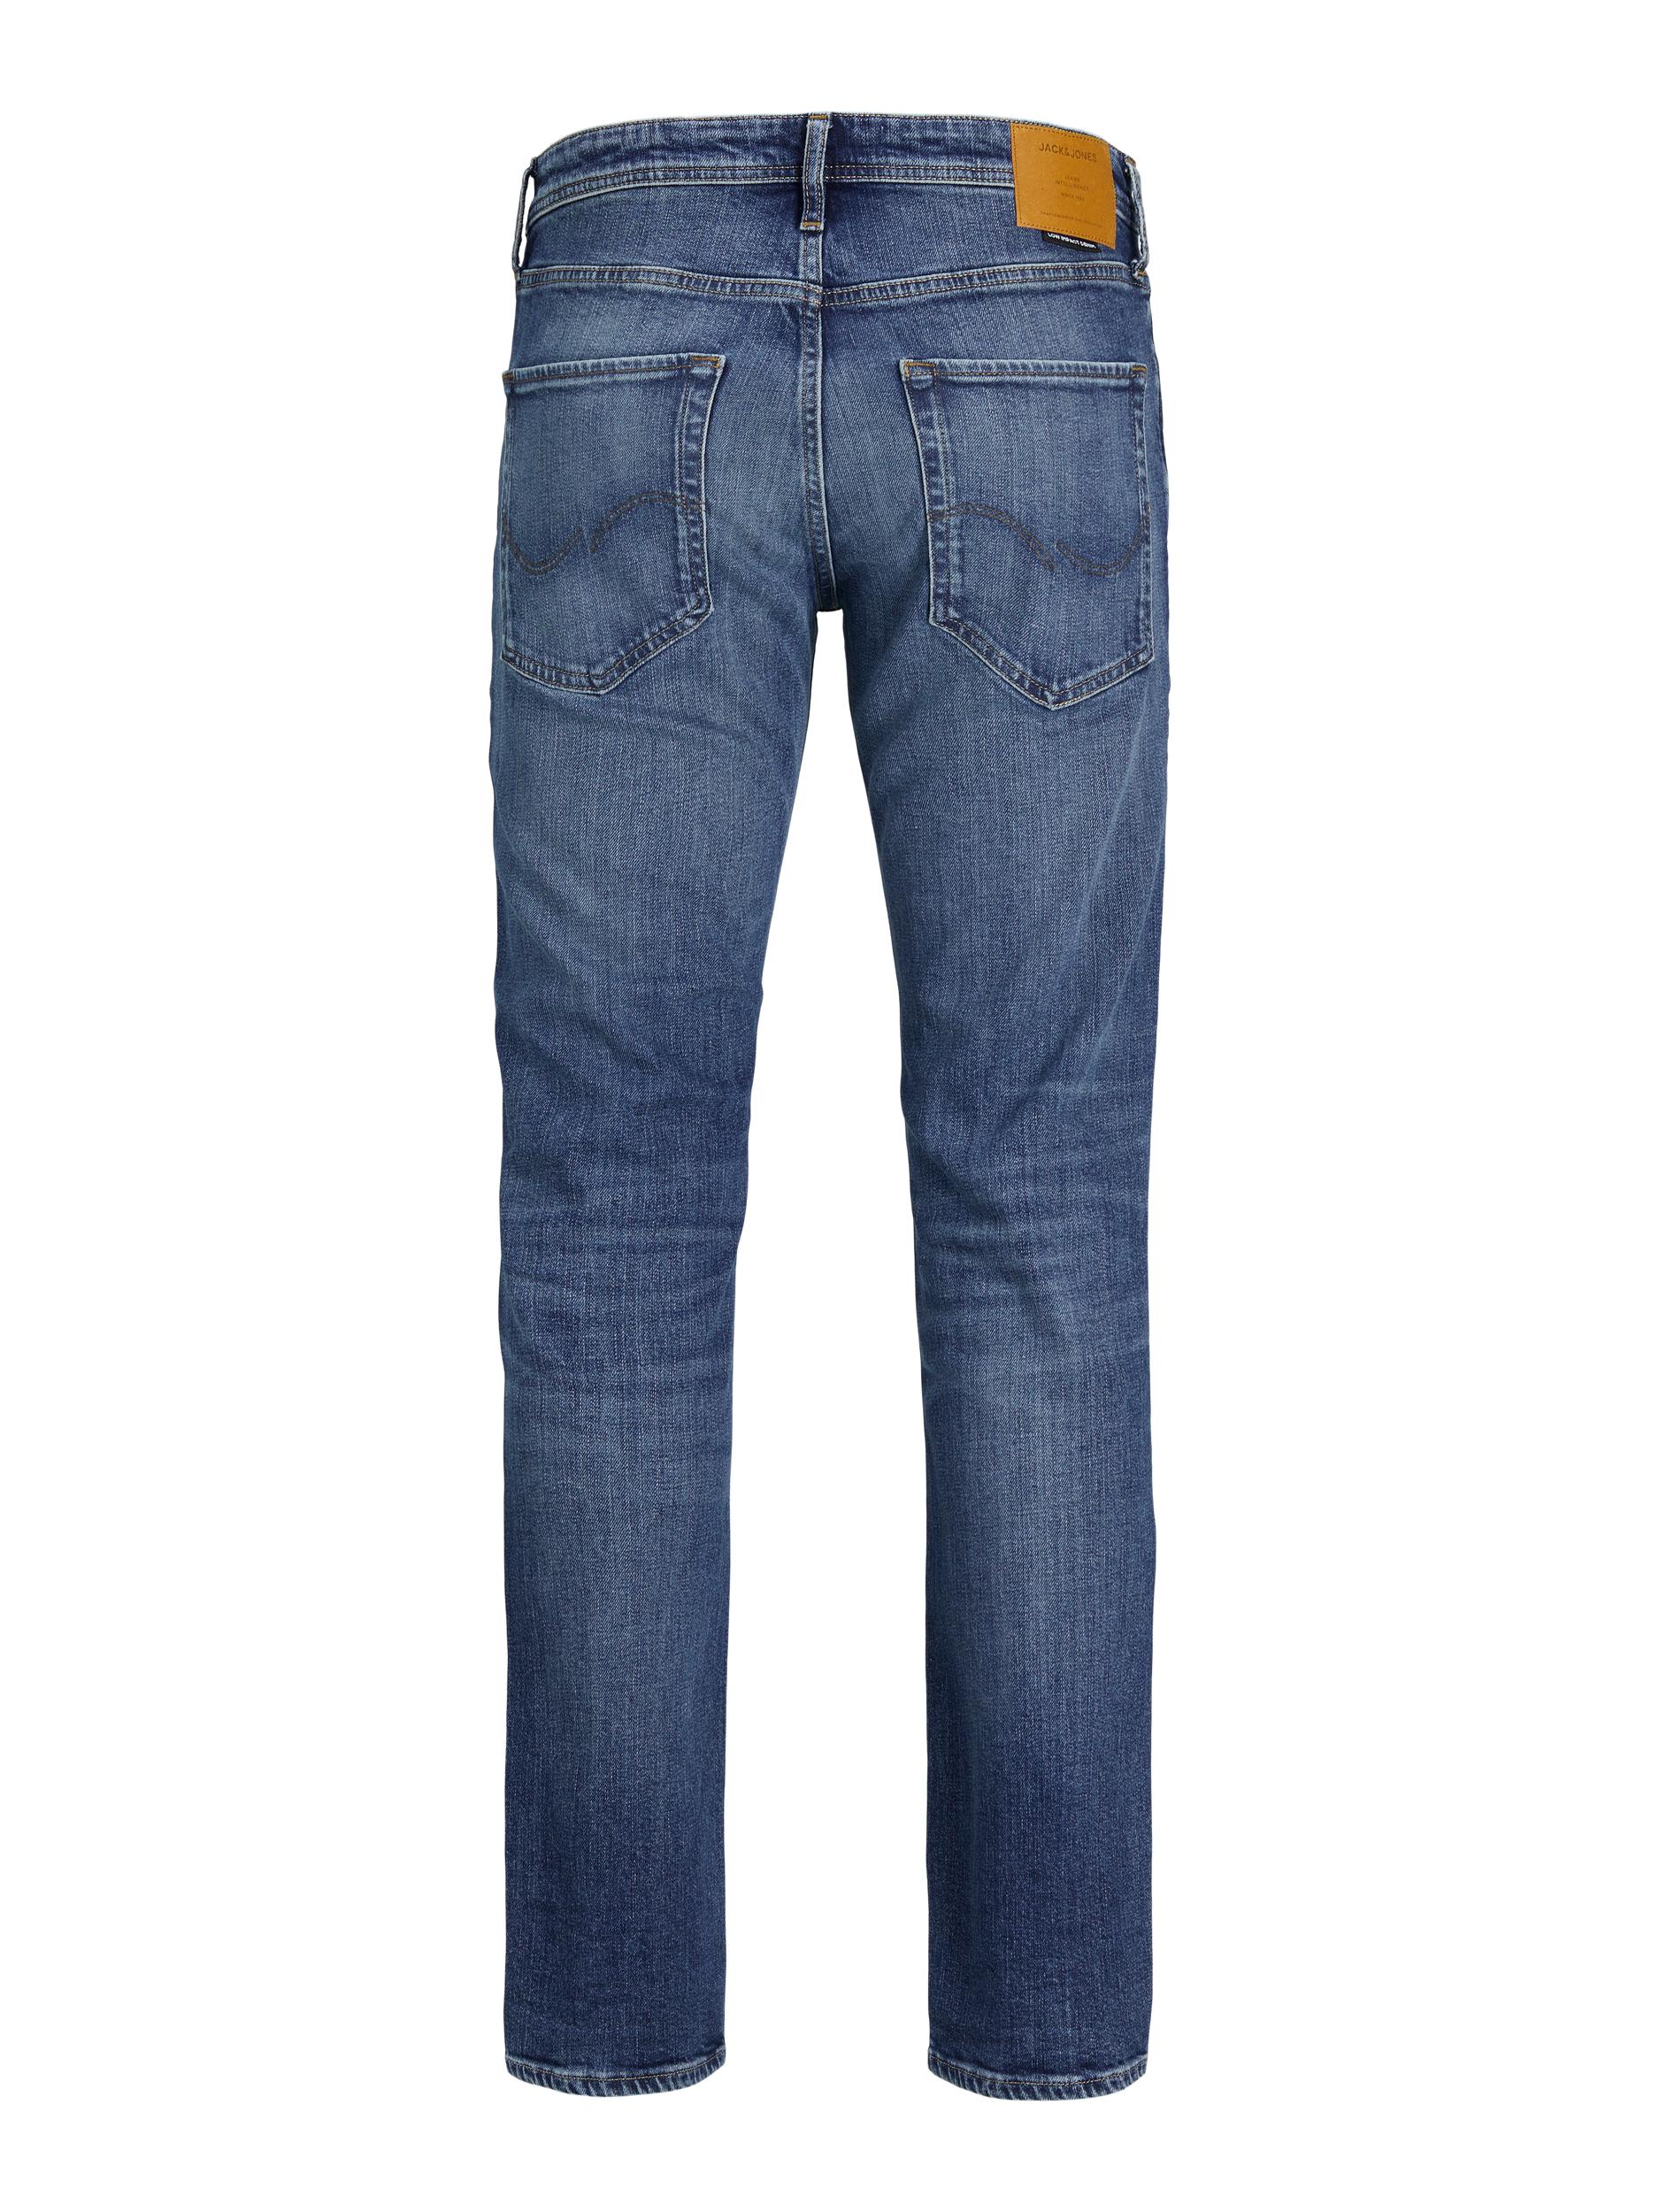  Clark Jeans, Blue Denim, W33/L32